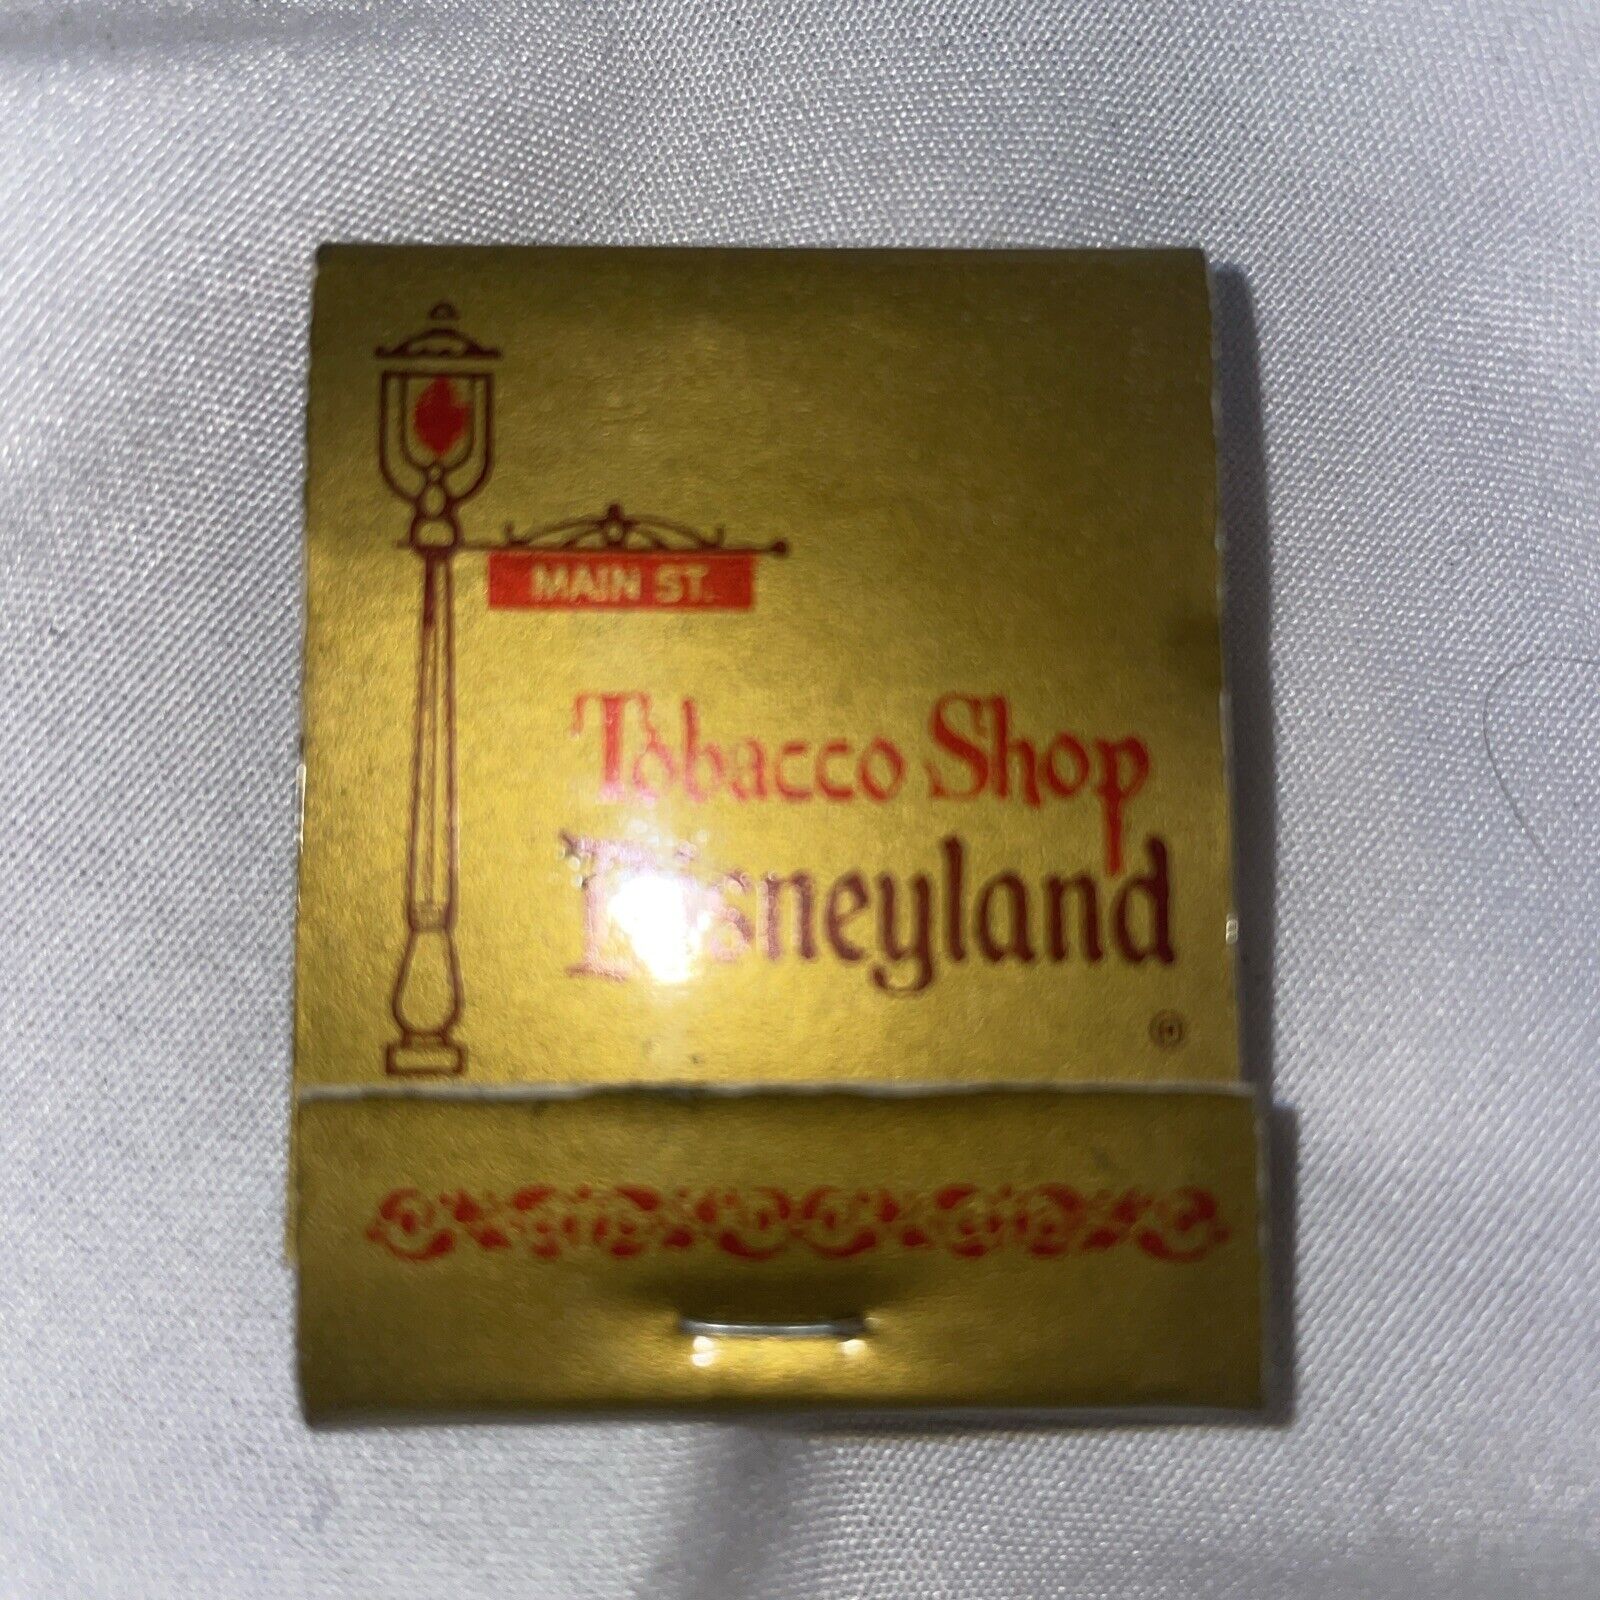 Vintage Disneyland Tobacco Shop Matchbook - Full & Unstruck